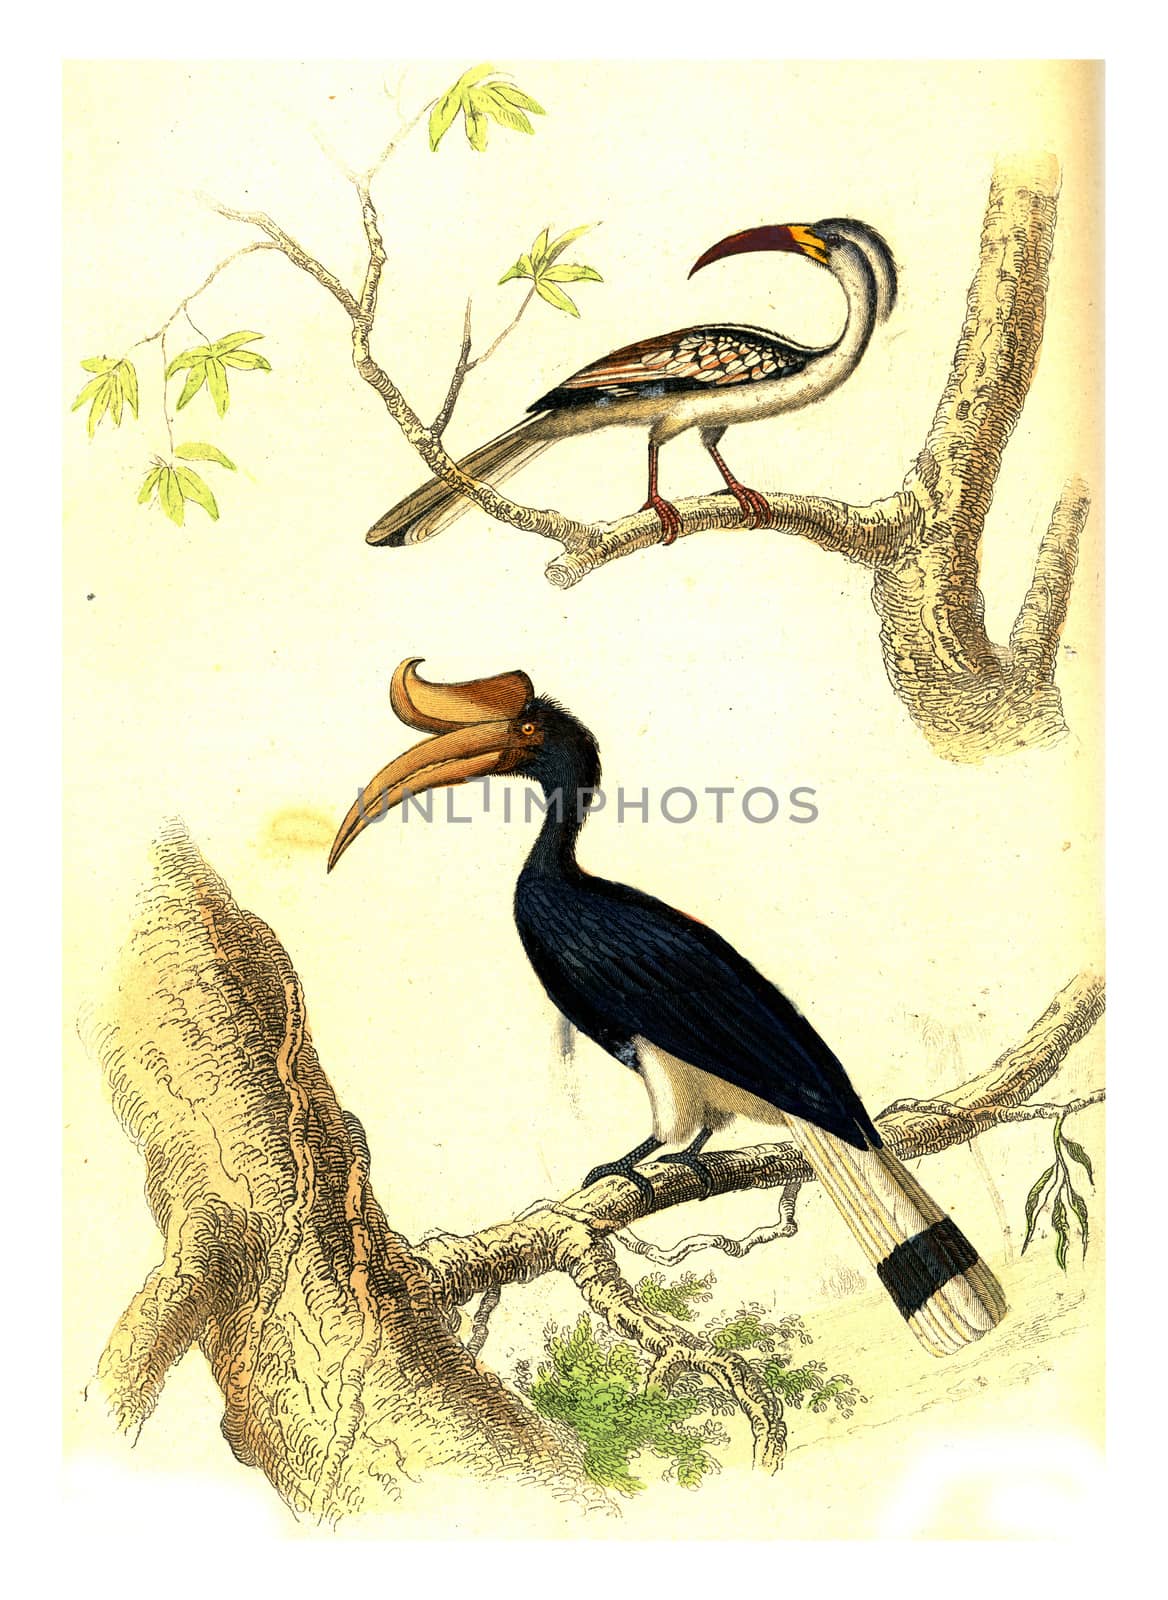 Hornbill, Rhinoceros Hornbill, vintage engraved illustration. From Buffon Complete Work.
